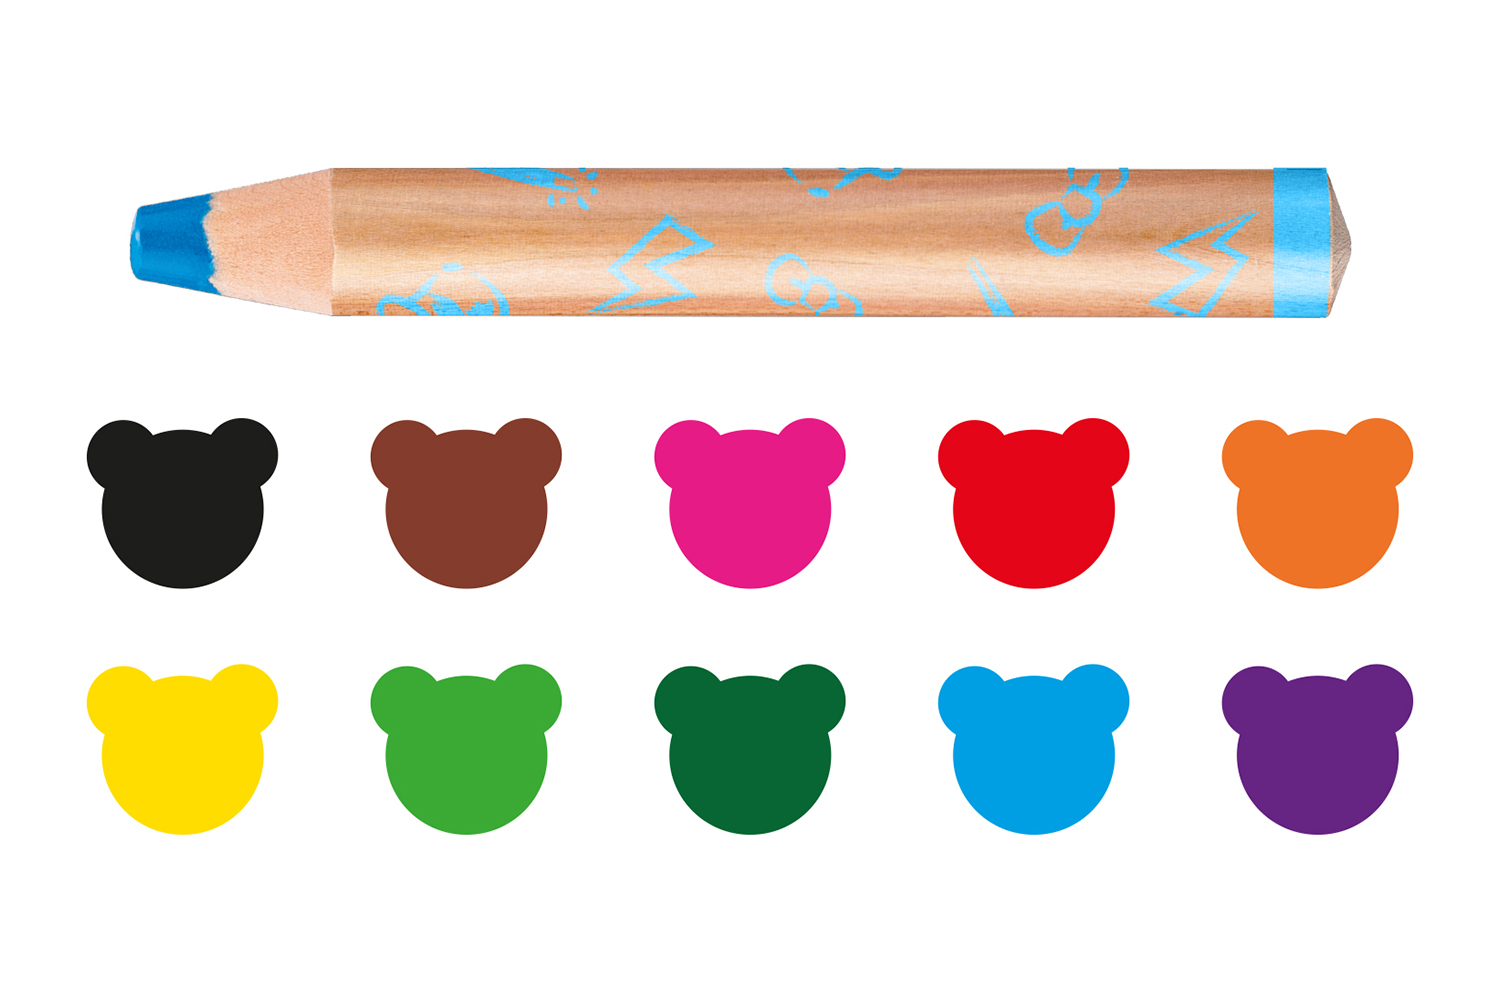 Crayons de couleur Giotto - A partir de 2 ans - Crayons de couleur - 10  Doigts